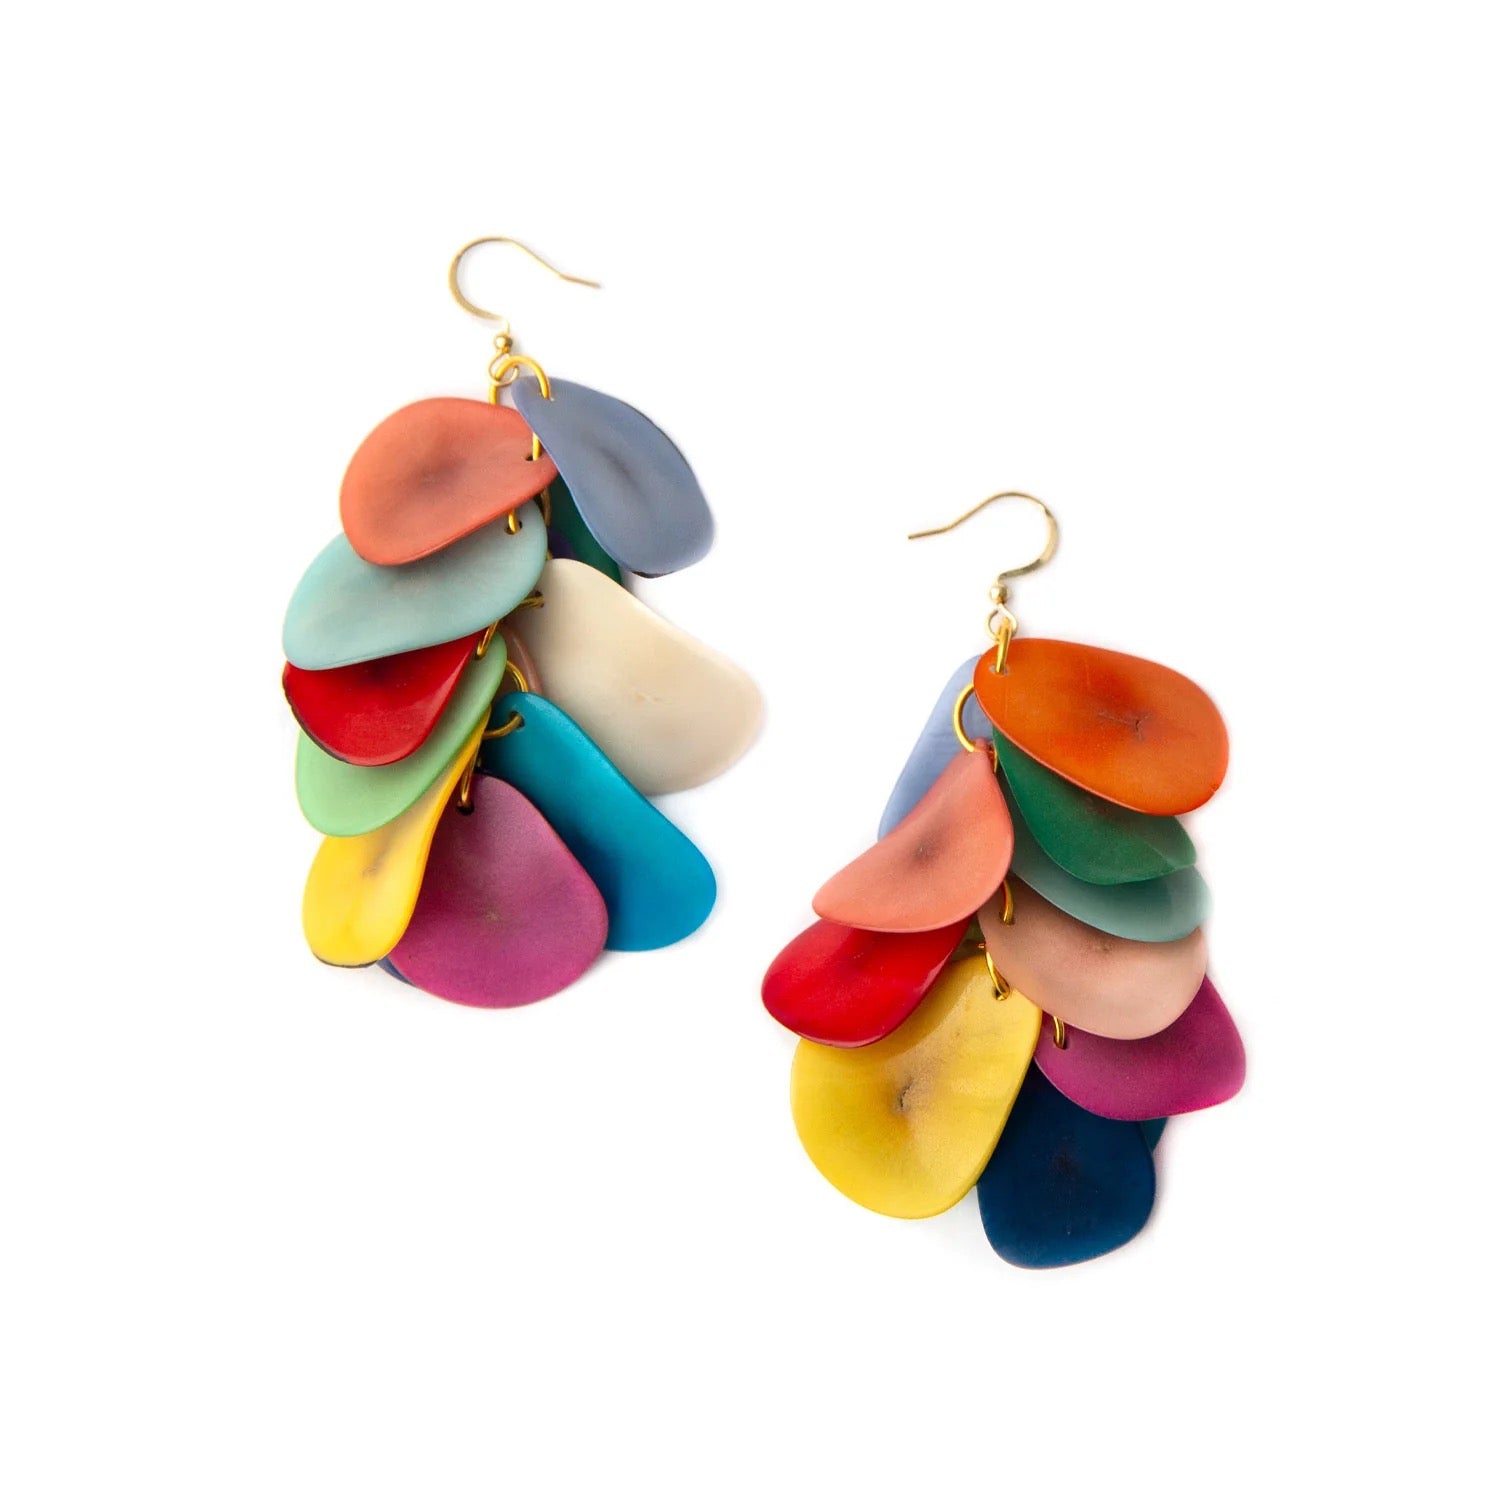 Tagua Jewelry "Bailey" Dangle Earrings in Multicolor